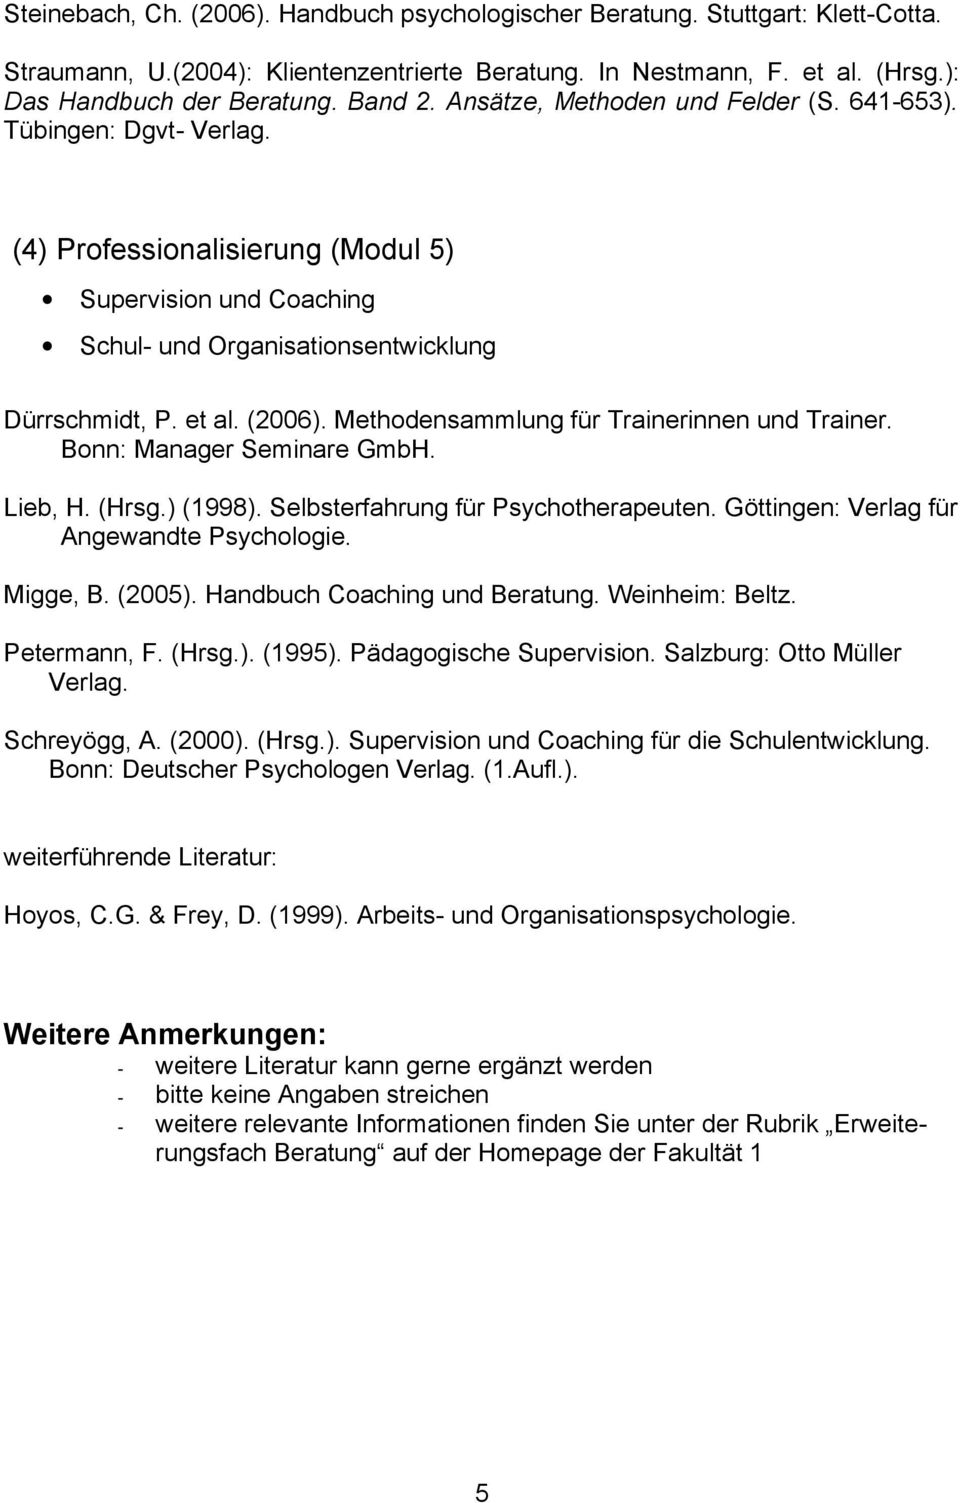 Methodensammlung für Trainerinnen und Trainer. Bonn: Manager Seminare GmbH. Lieb, H. (Hrsg.) (1998). Selbsterfahrung für Psychotherapeuten. Göttingen: Verlag für Angewandte Psychologie. Migge, B.